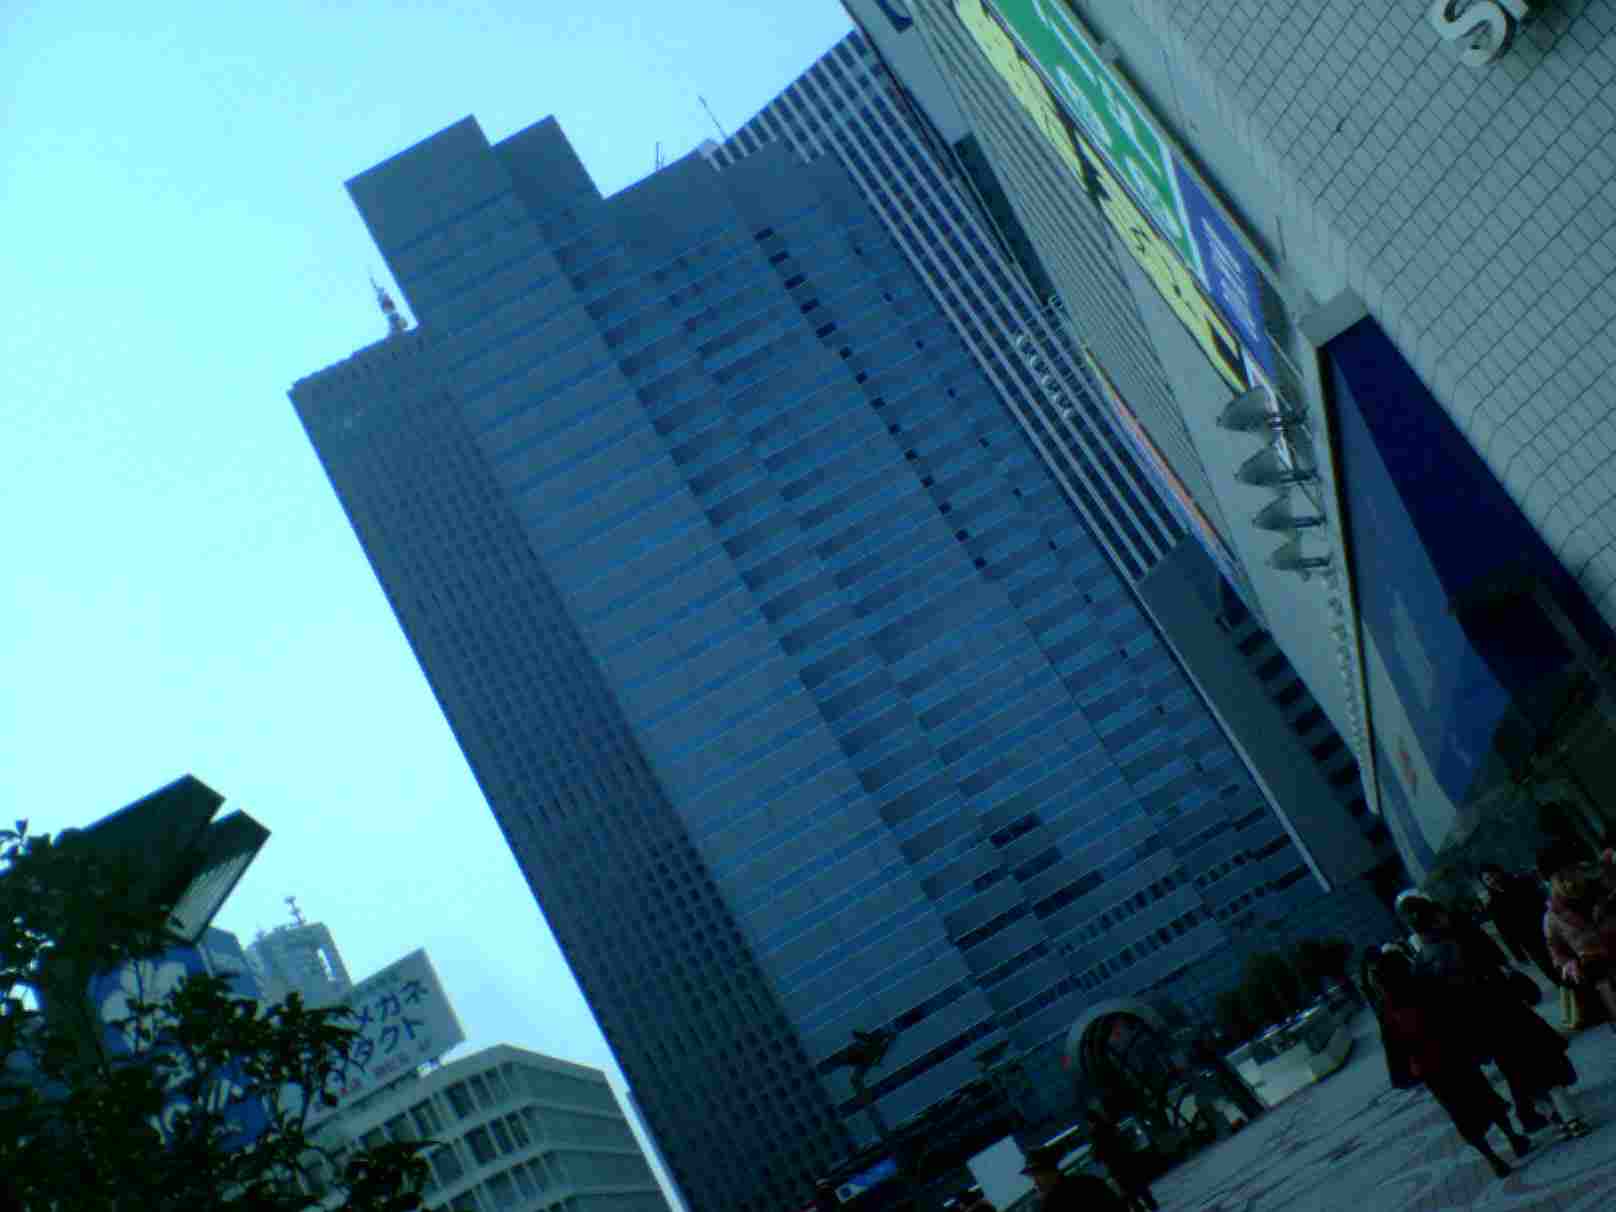 新宿エルタワー